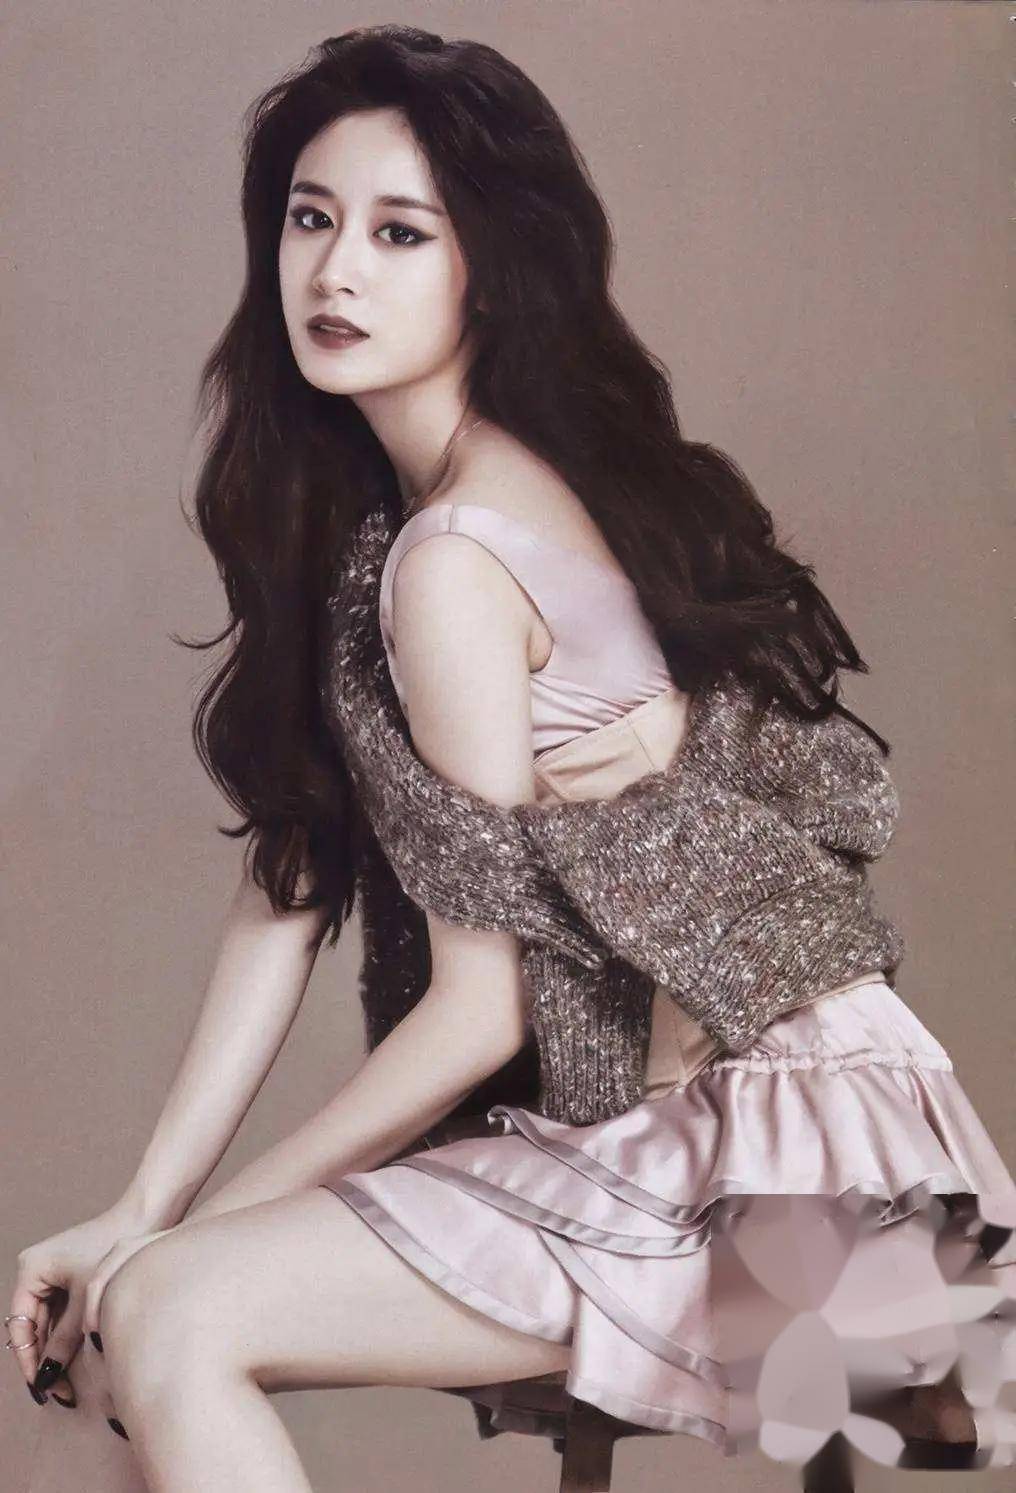 近日,韩国女星朴智妍的一组写真照在网上引起了广泛关注